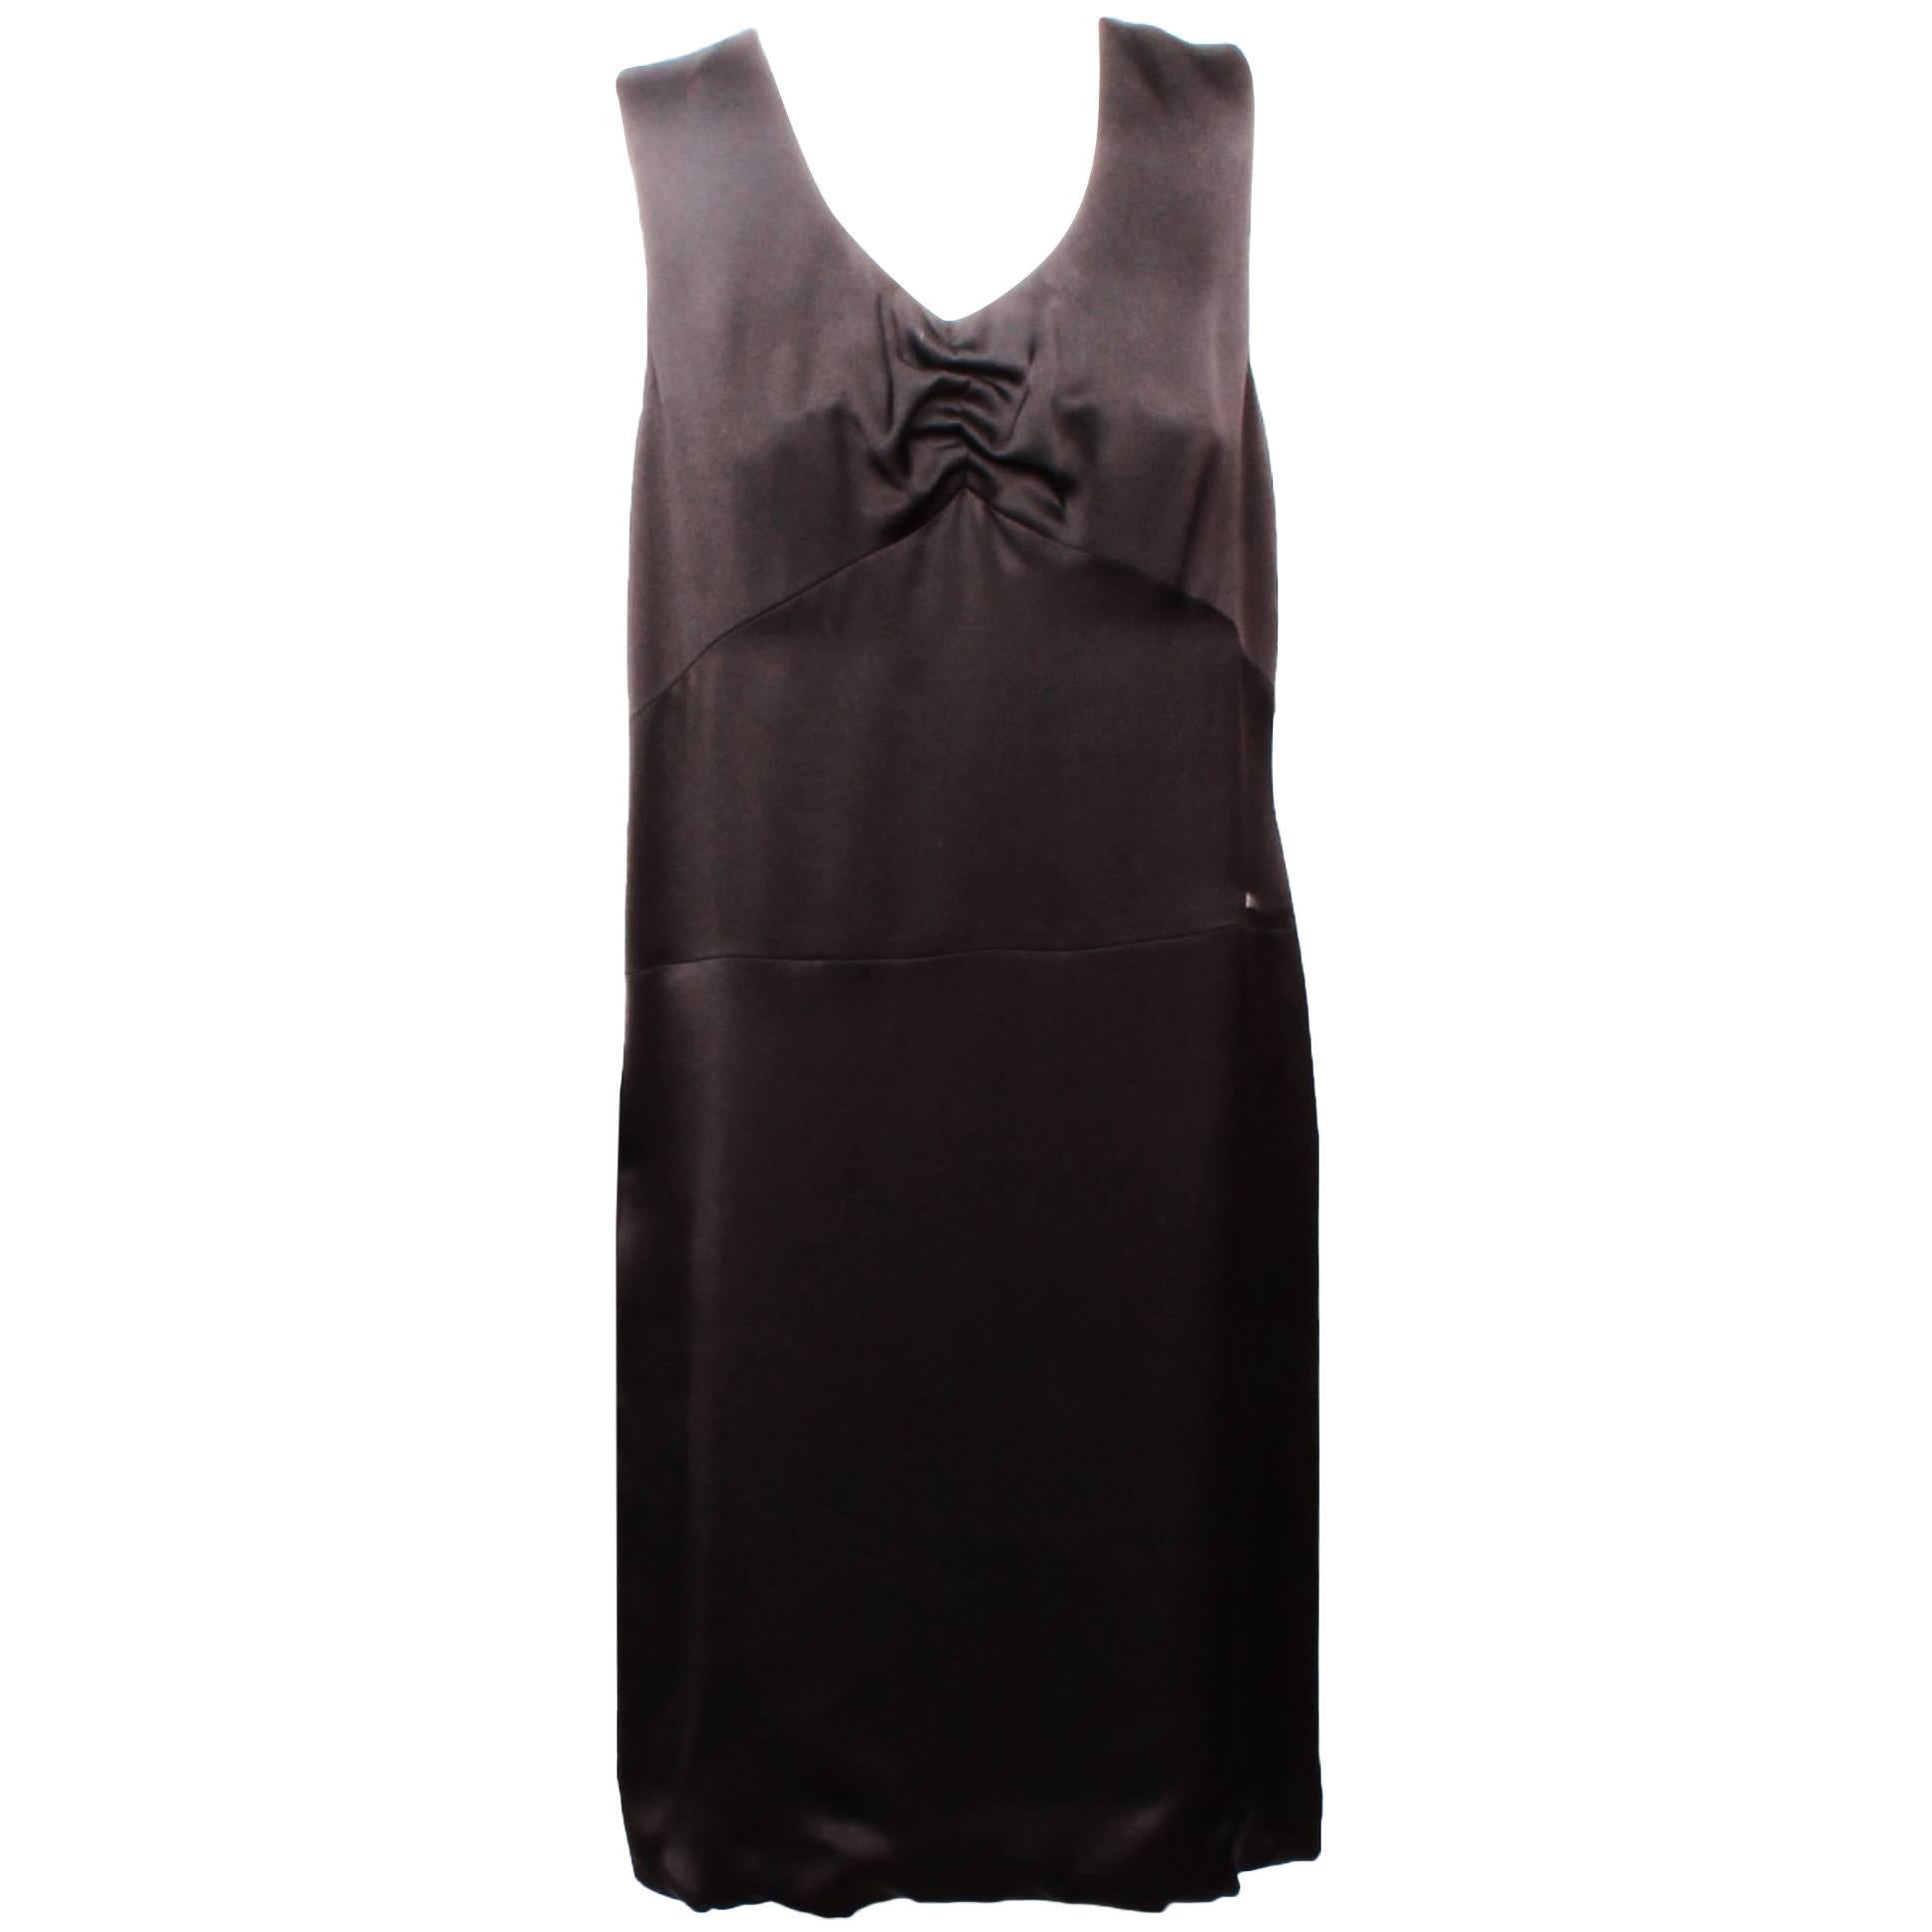 Chanel Little Black Dress - 54 For Sale on 1stDibs